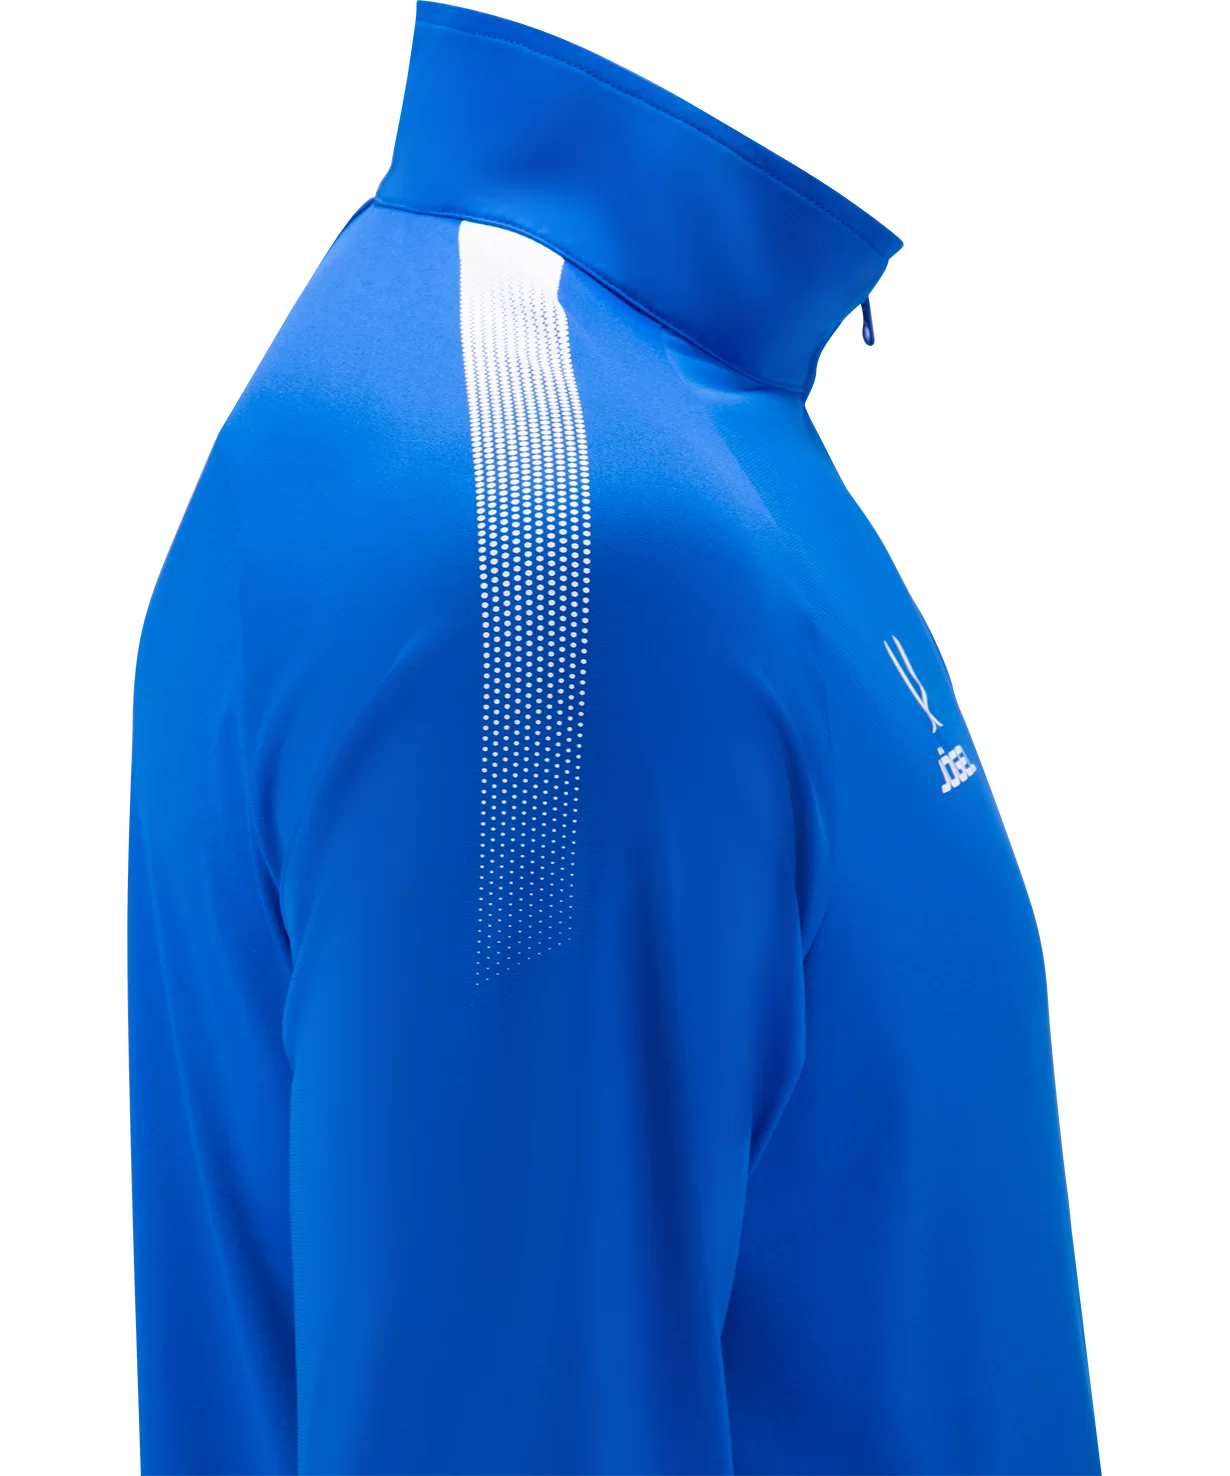 Фото Олимпийка CAMP Training Jacket FZ, синий Jögel со склада магазина СпортЕВ